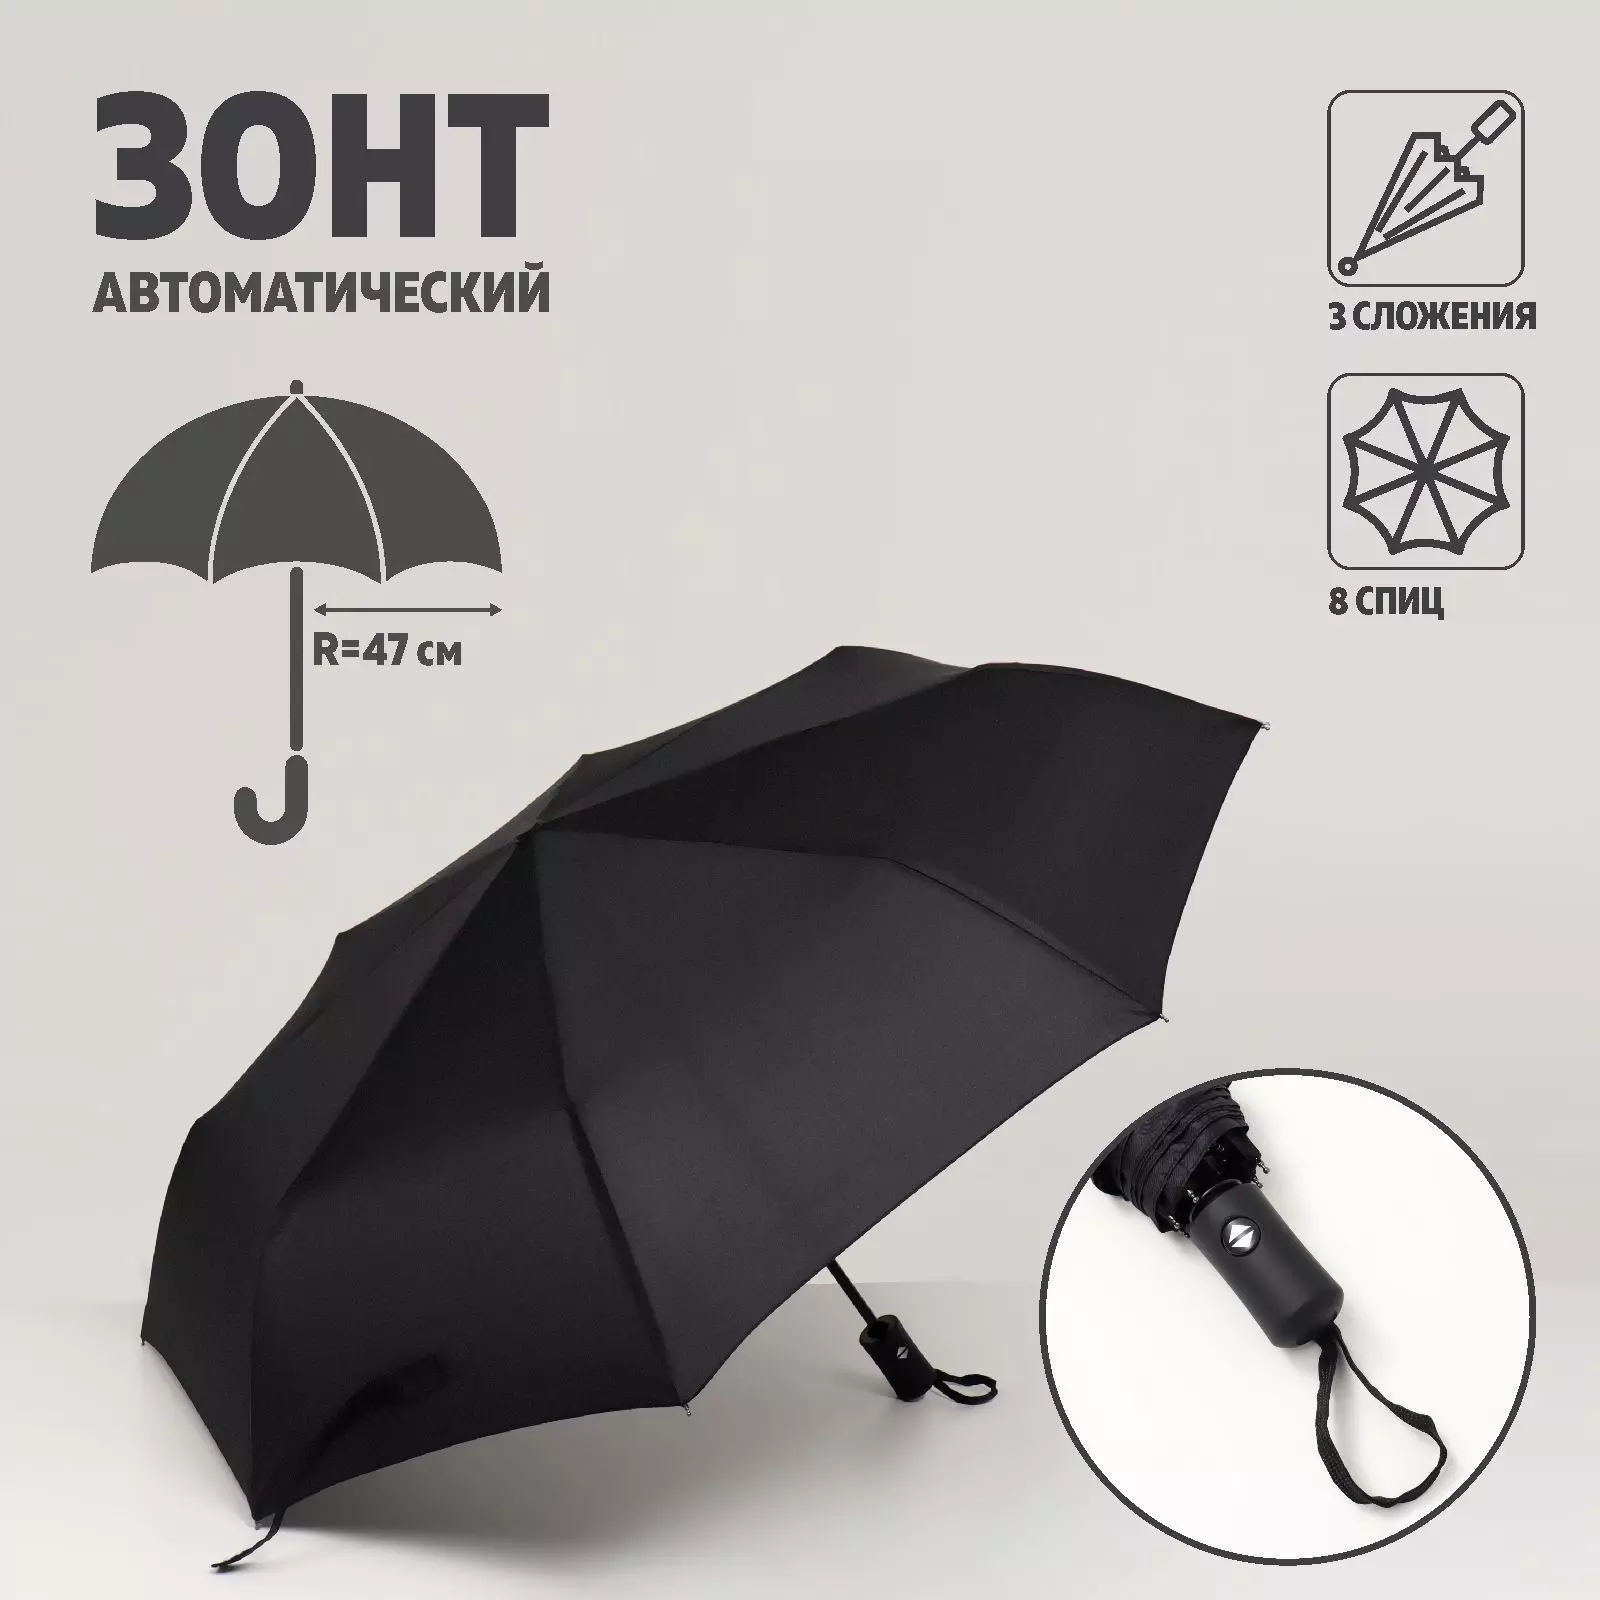 Зонт автоматический «Benjamin», 3 сложения, 8 спиц, R = 47 см, цвет чёрный 5570317